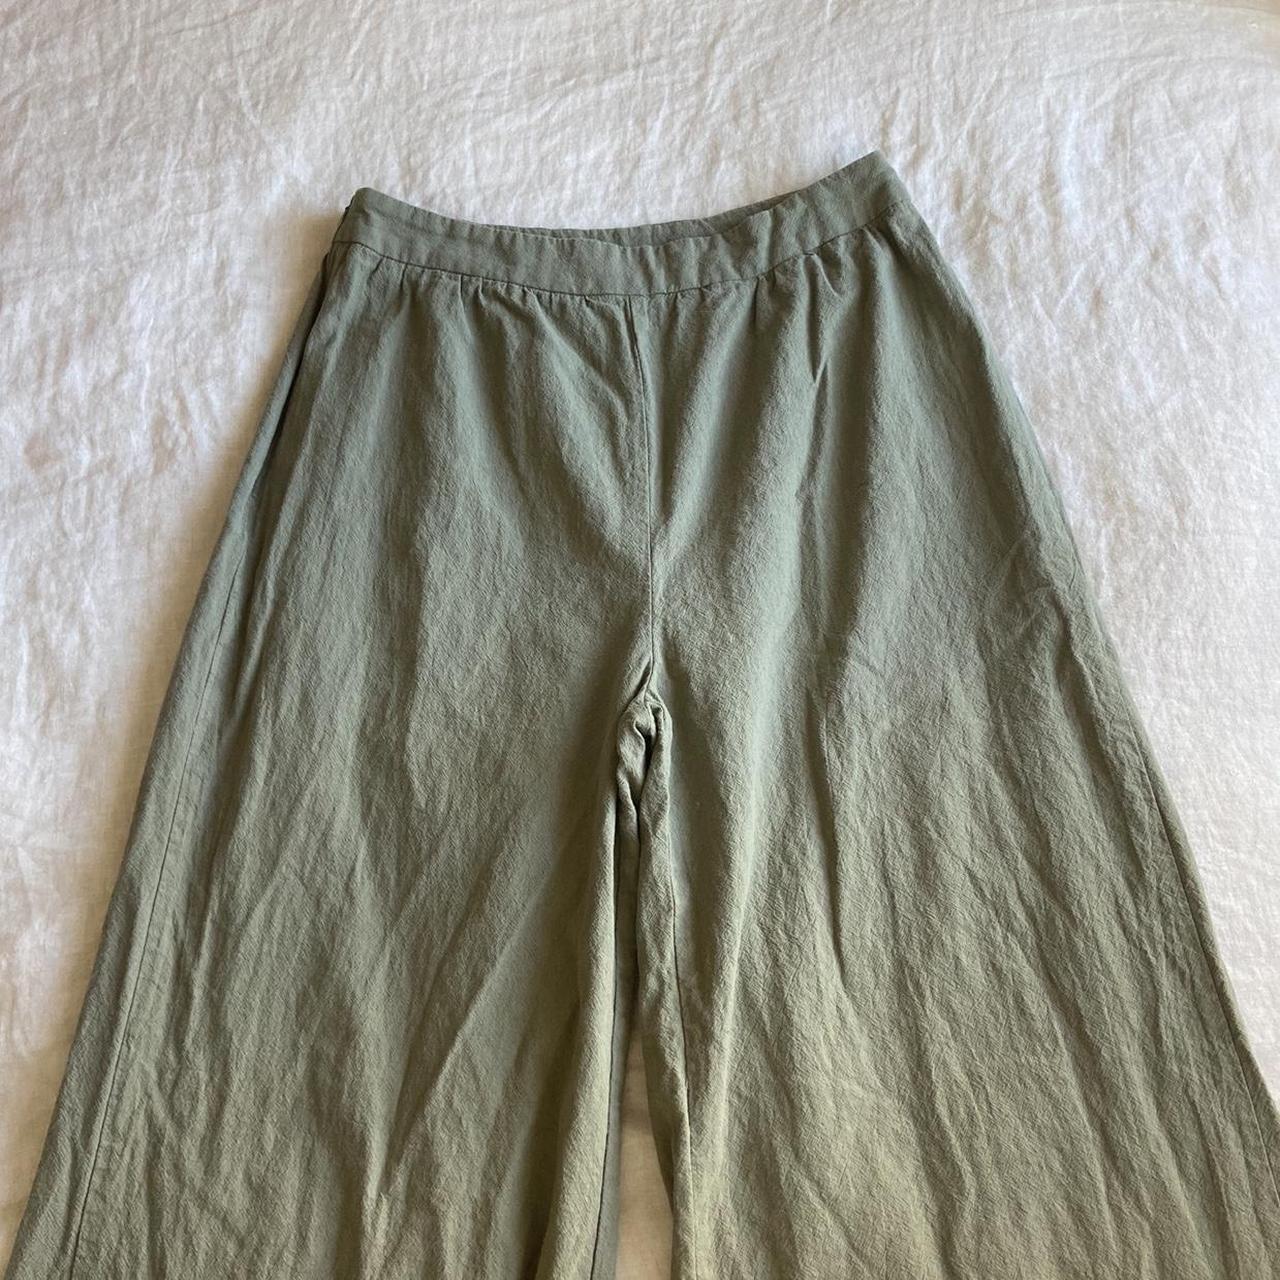 Olive Green Linen Pants Size L #linen #pants... - Depop